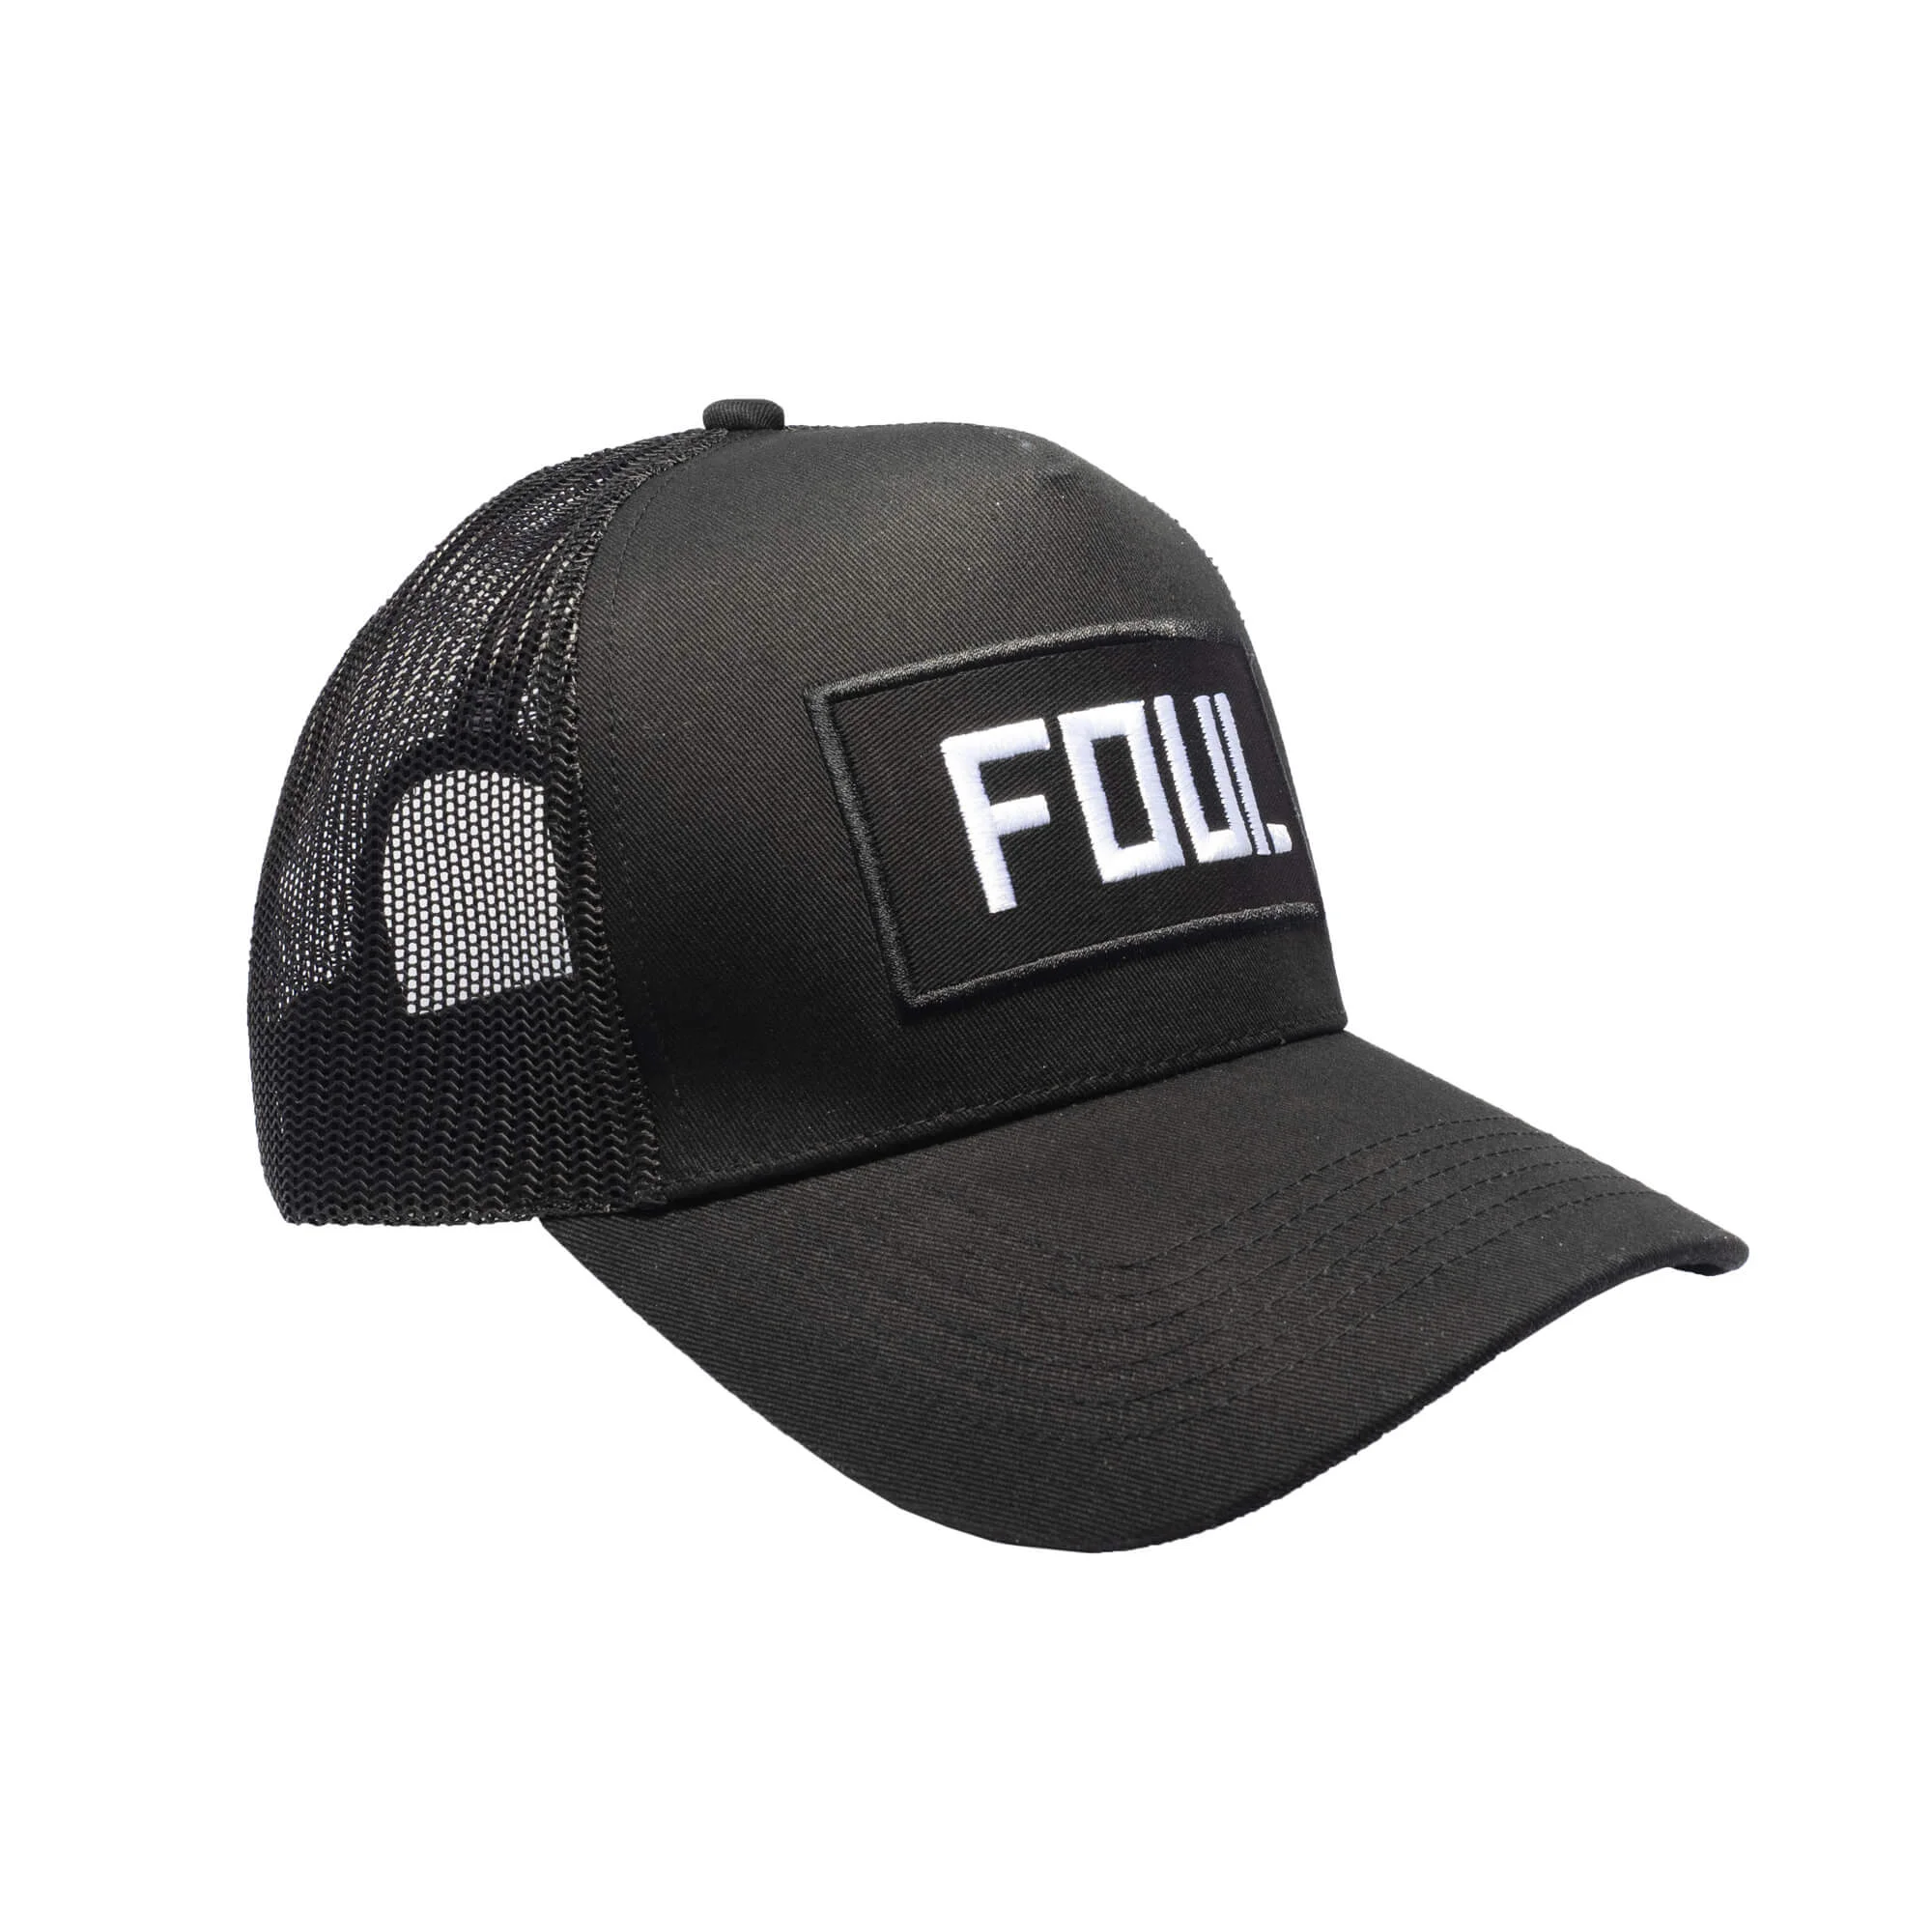 Trucker cap FOUL (3)